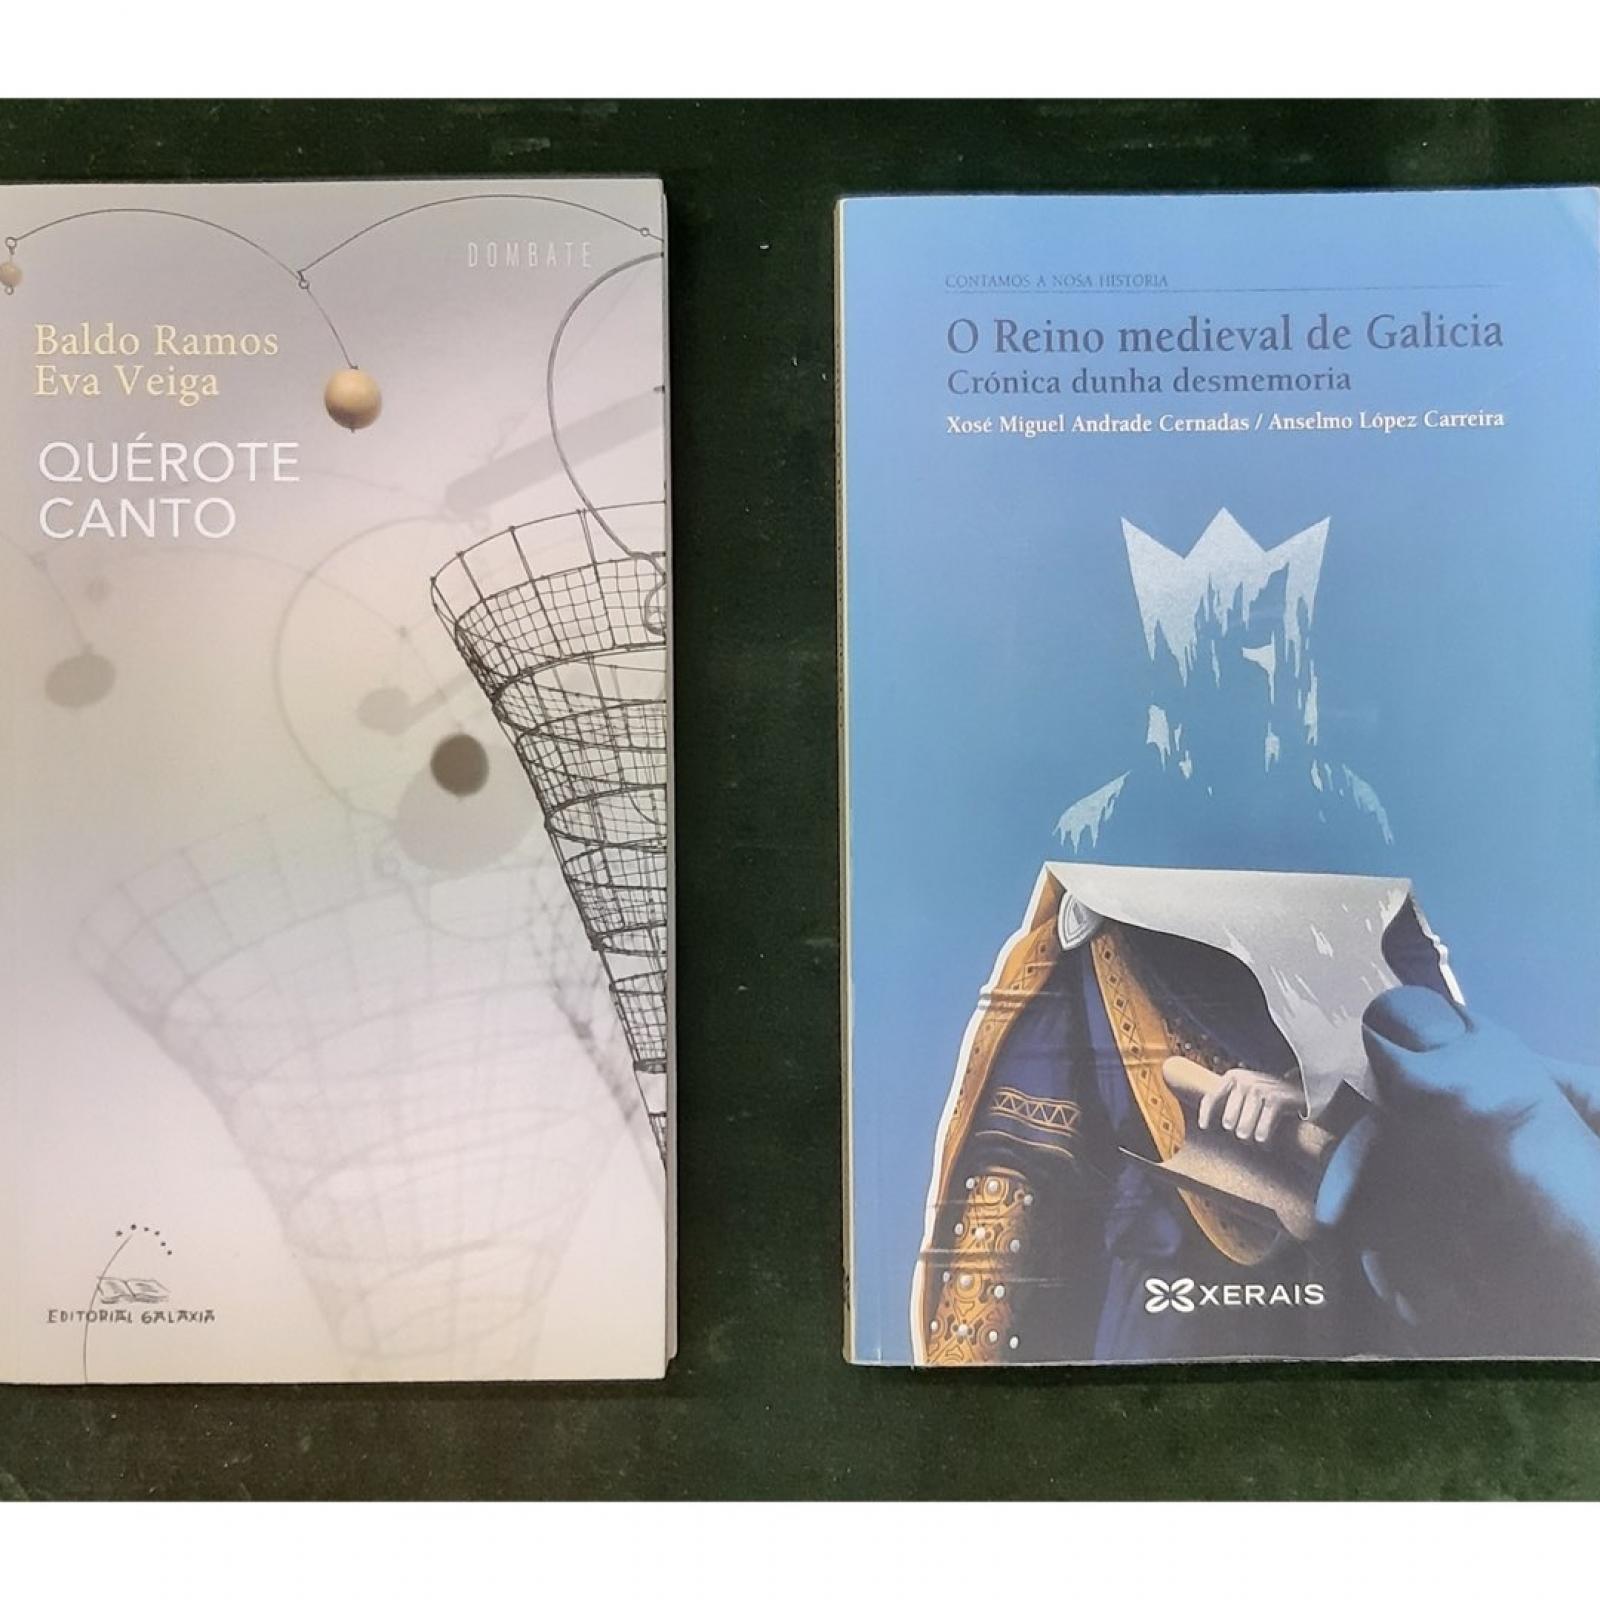 Capas dos libros premiados na 36 edición dos Losada Diéguez